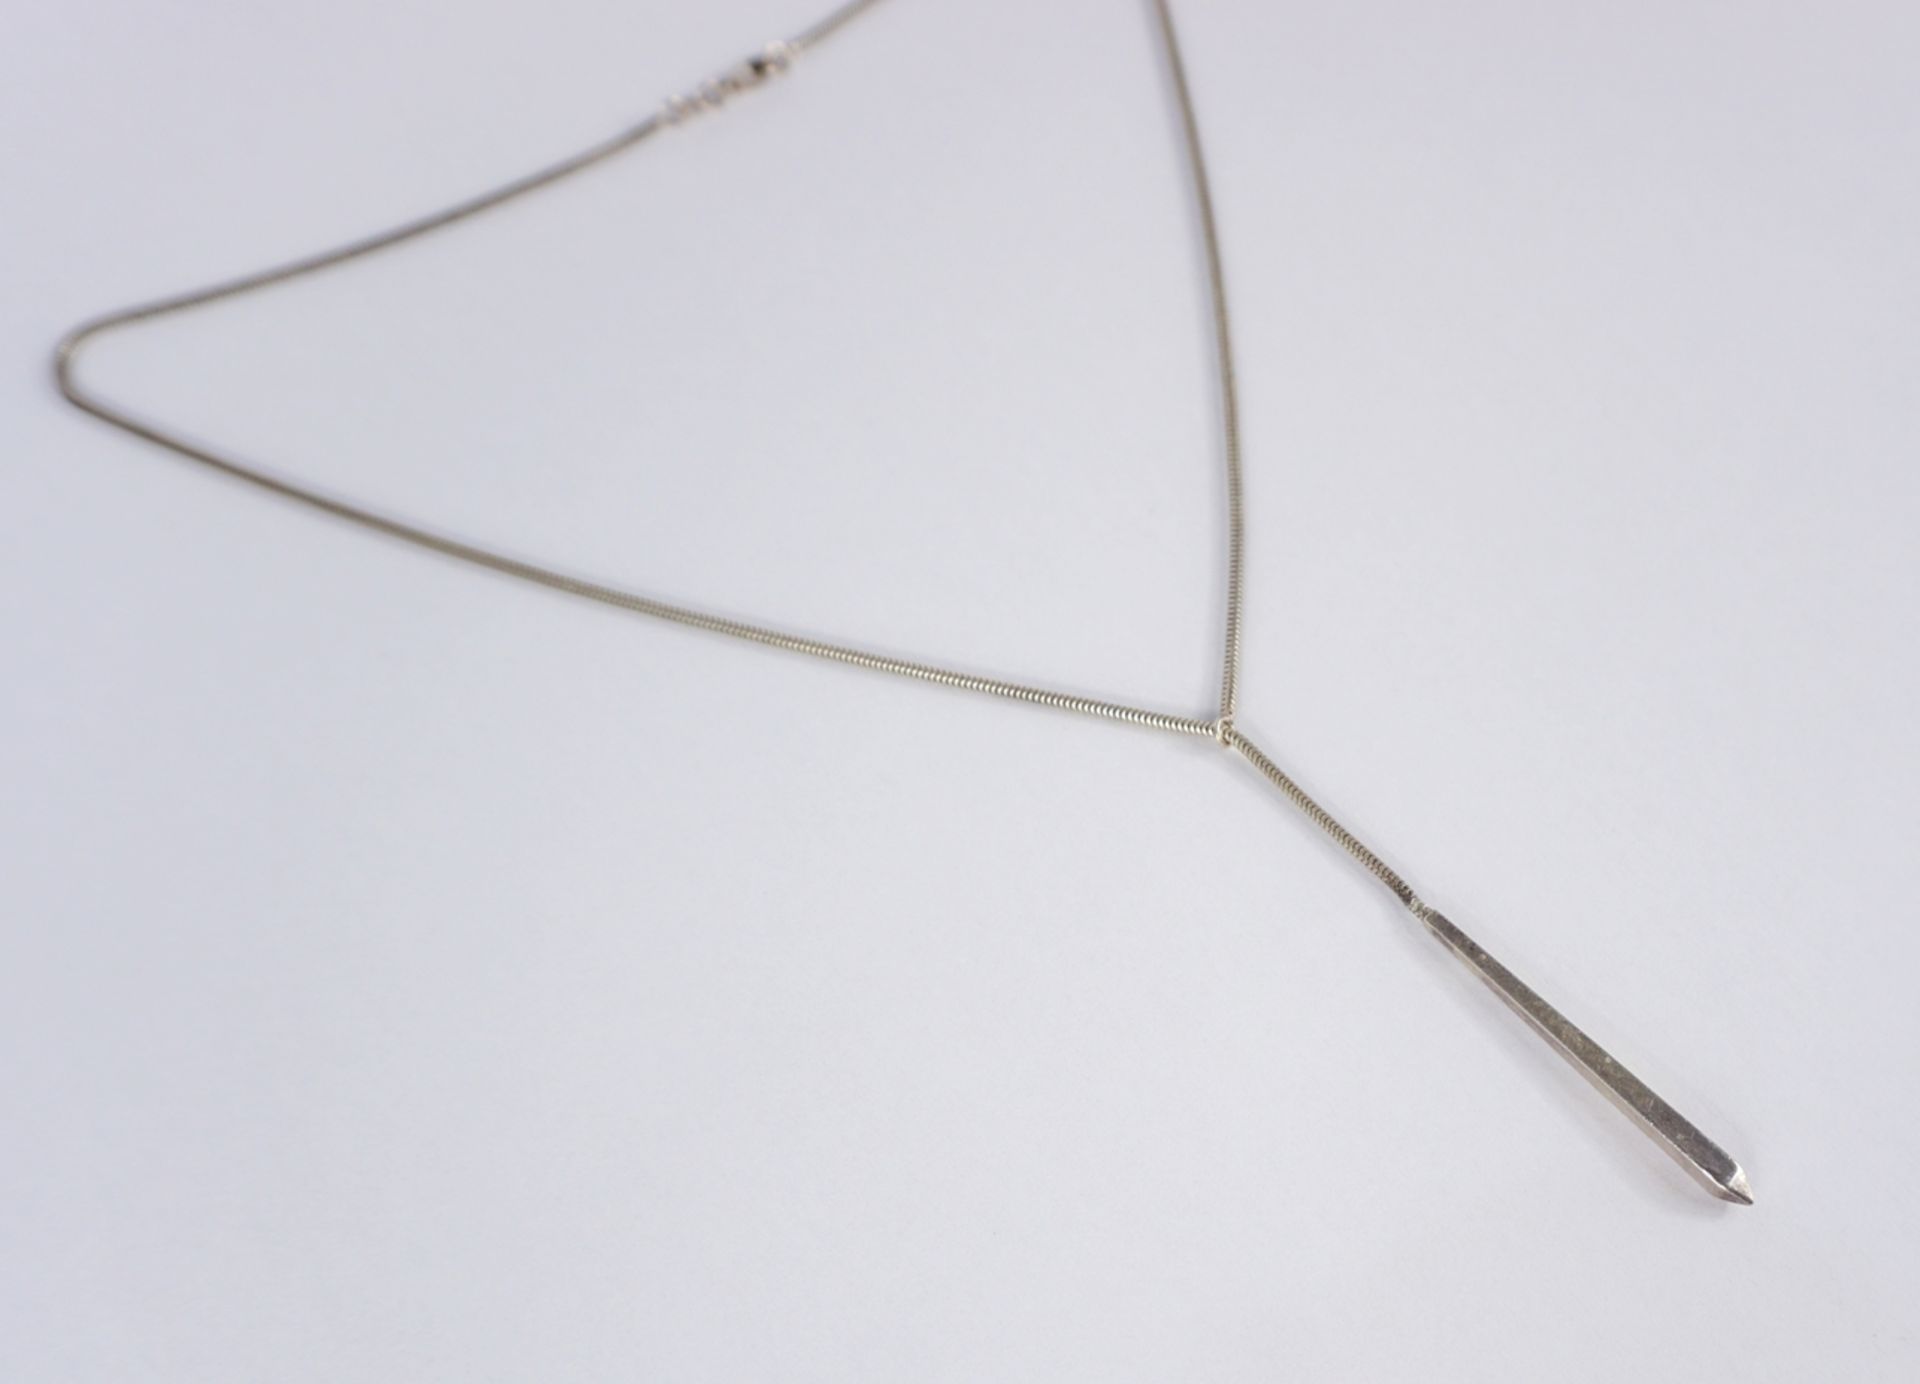 Kette mit Stabanhänger, 2 Colliers und 1 Paar Ohrringe, versilbert - Bild 5 aus 5